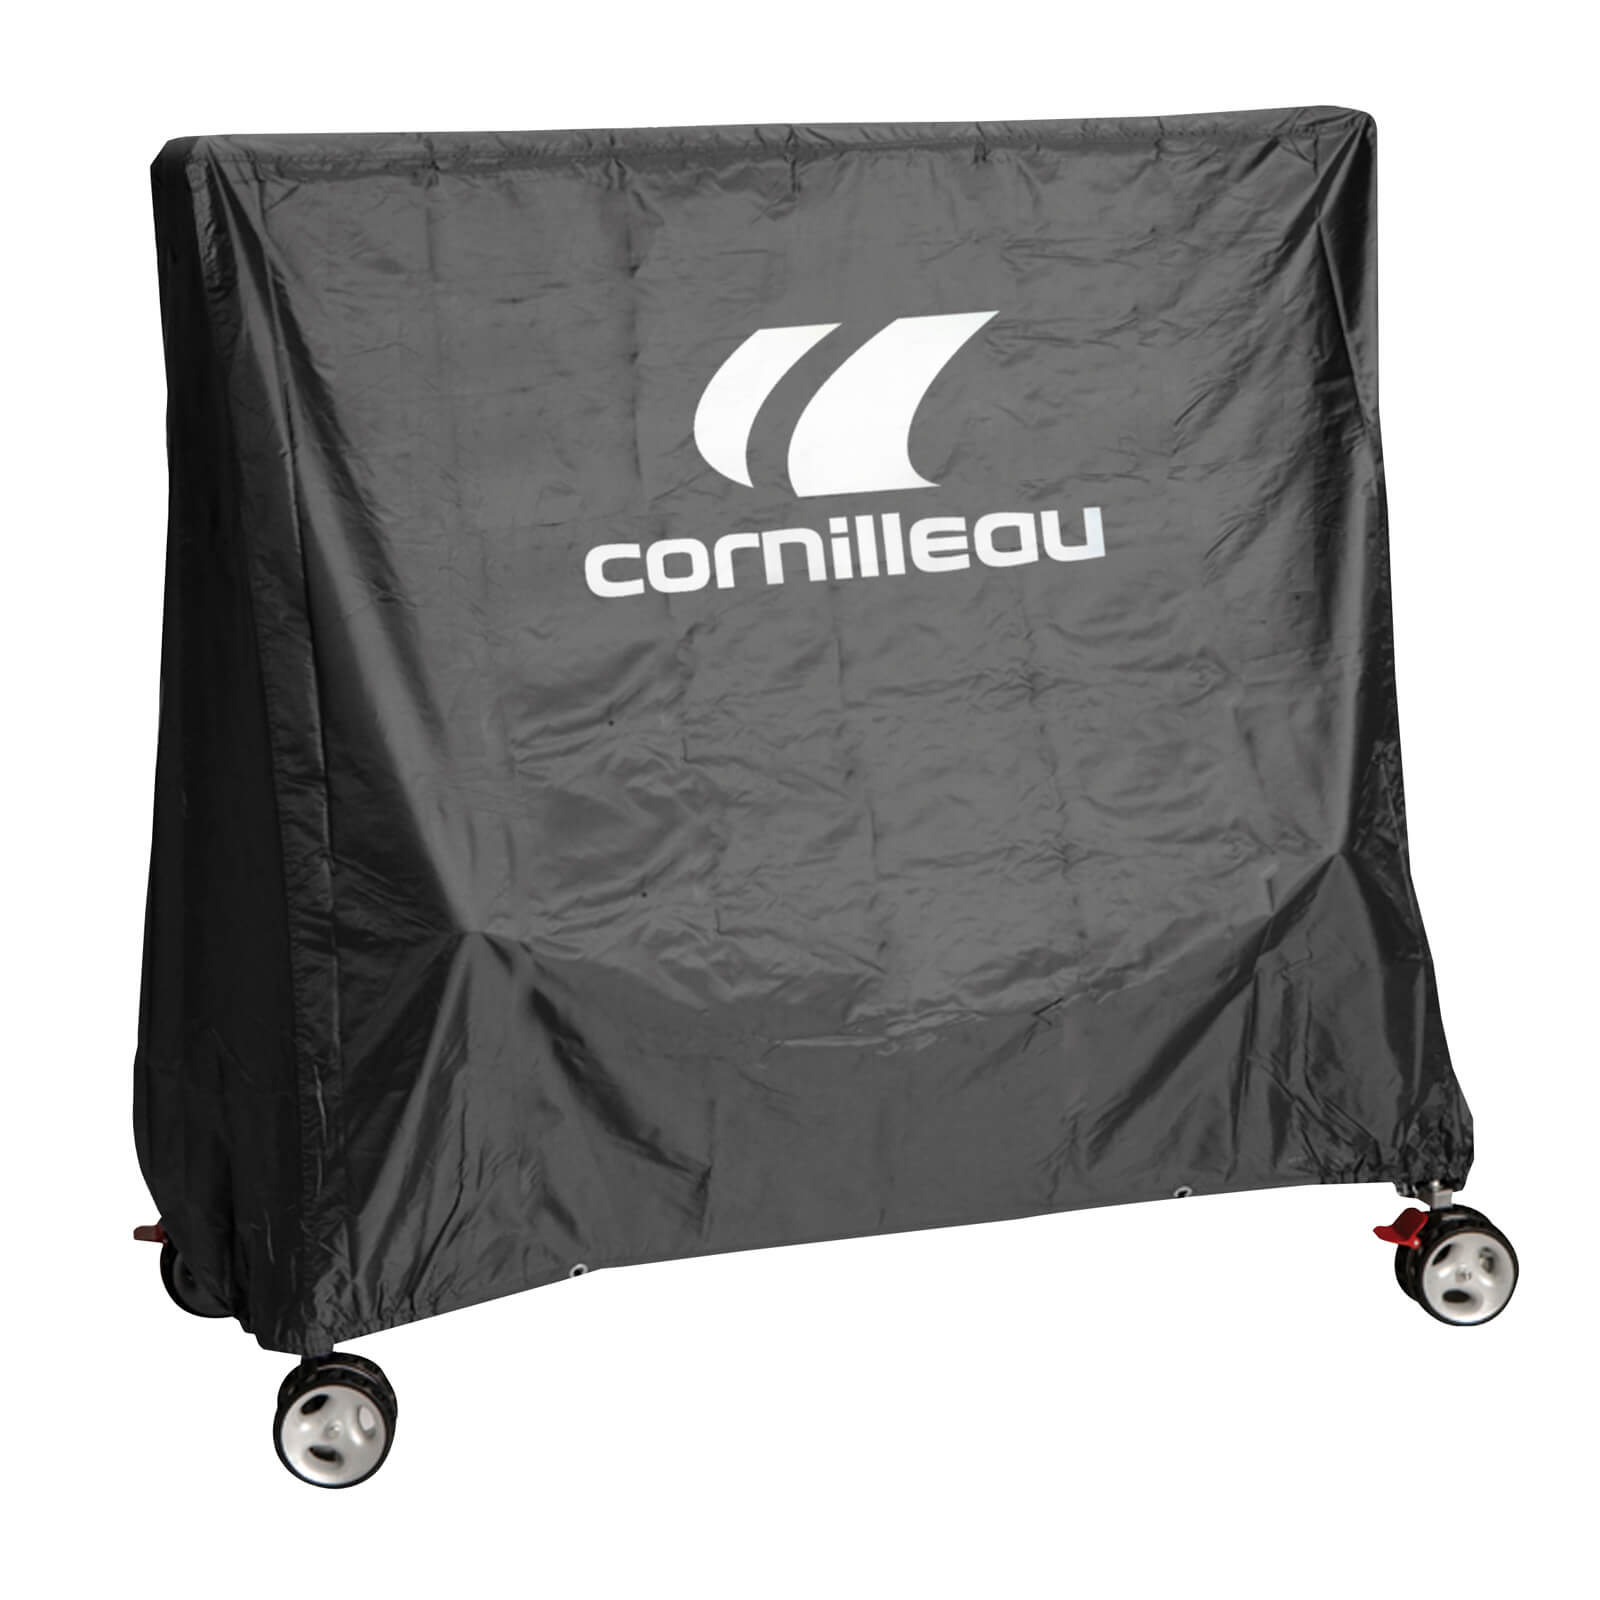     Cornilleau Premium, 